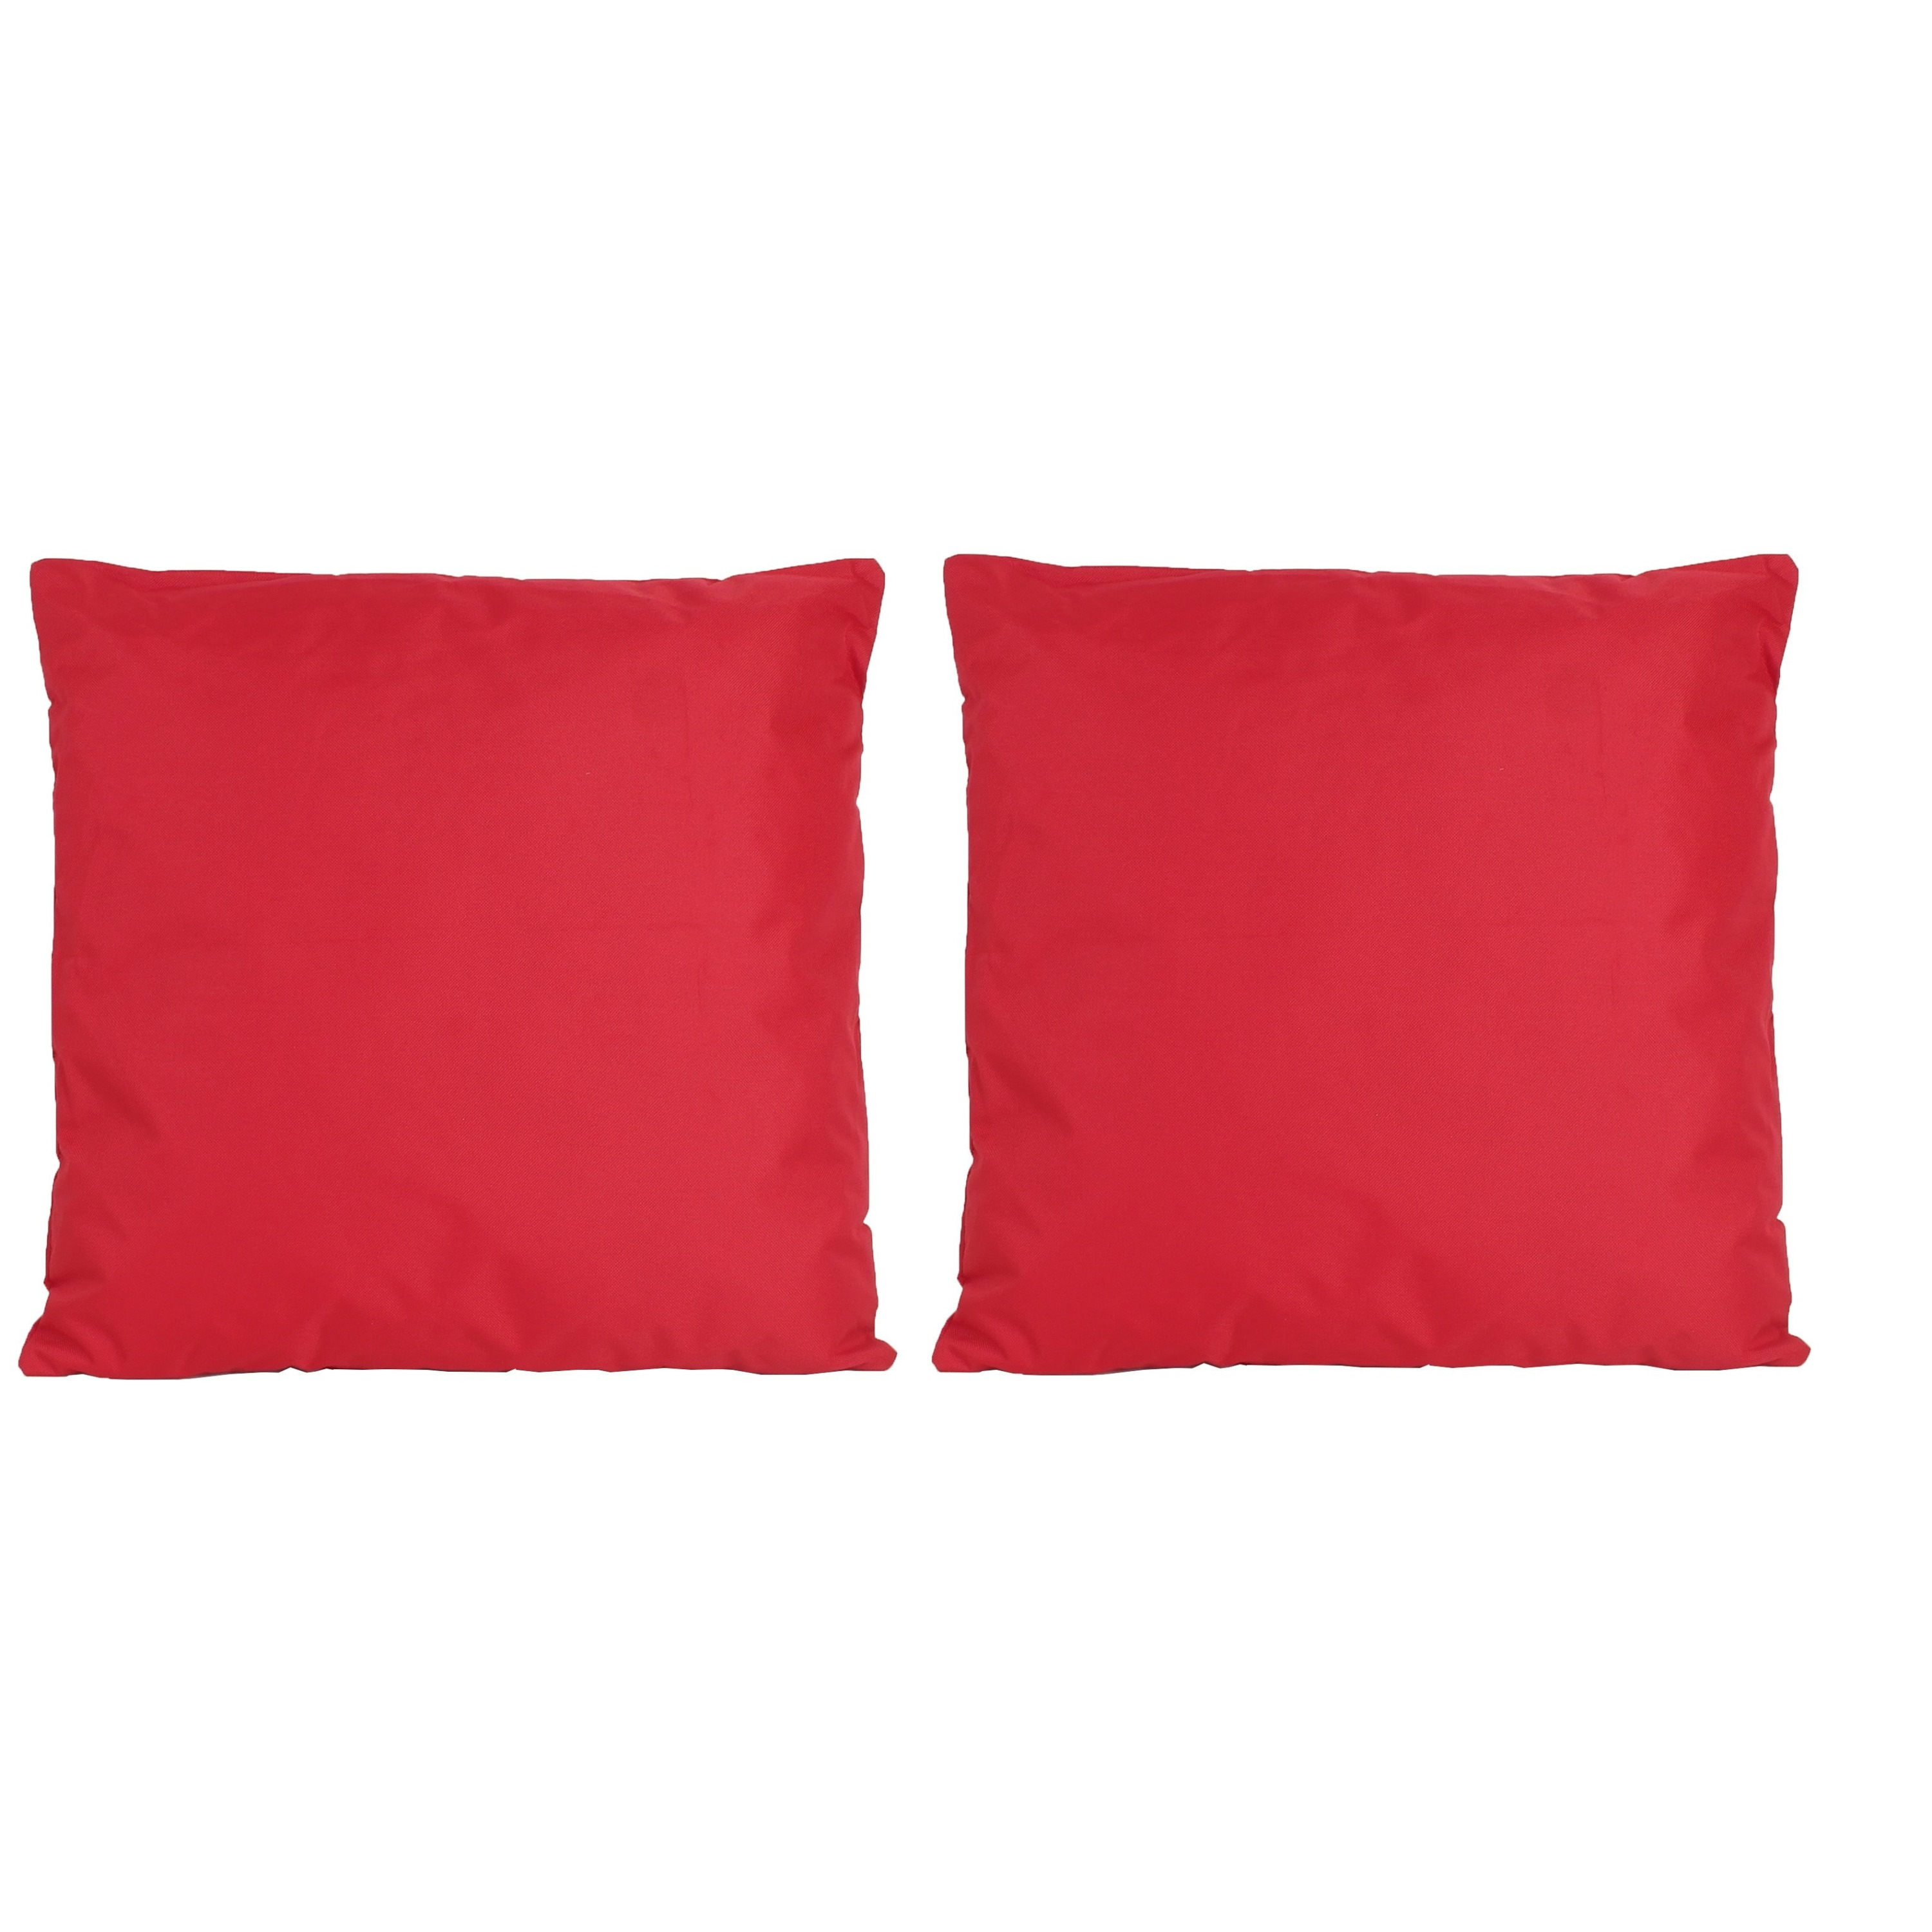 6x Bank-sier kussens voor binnen en buiten in de kleur rood 45 x 45 cm